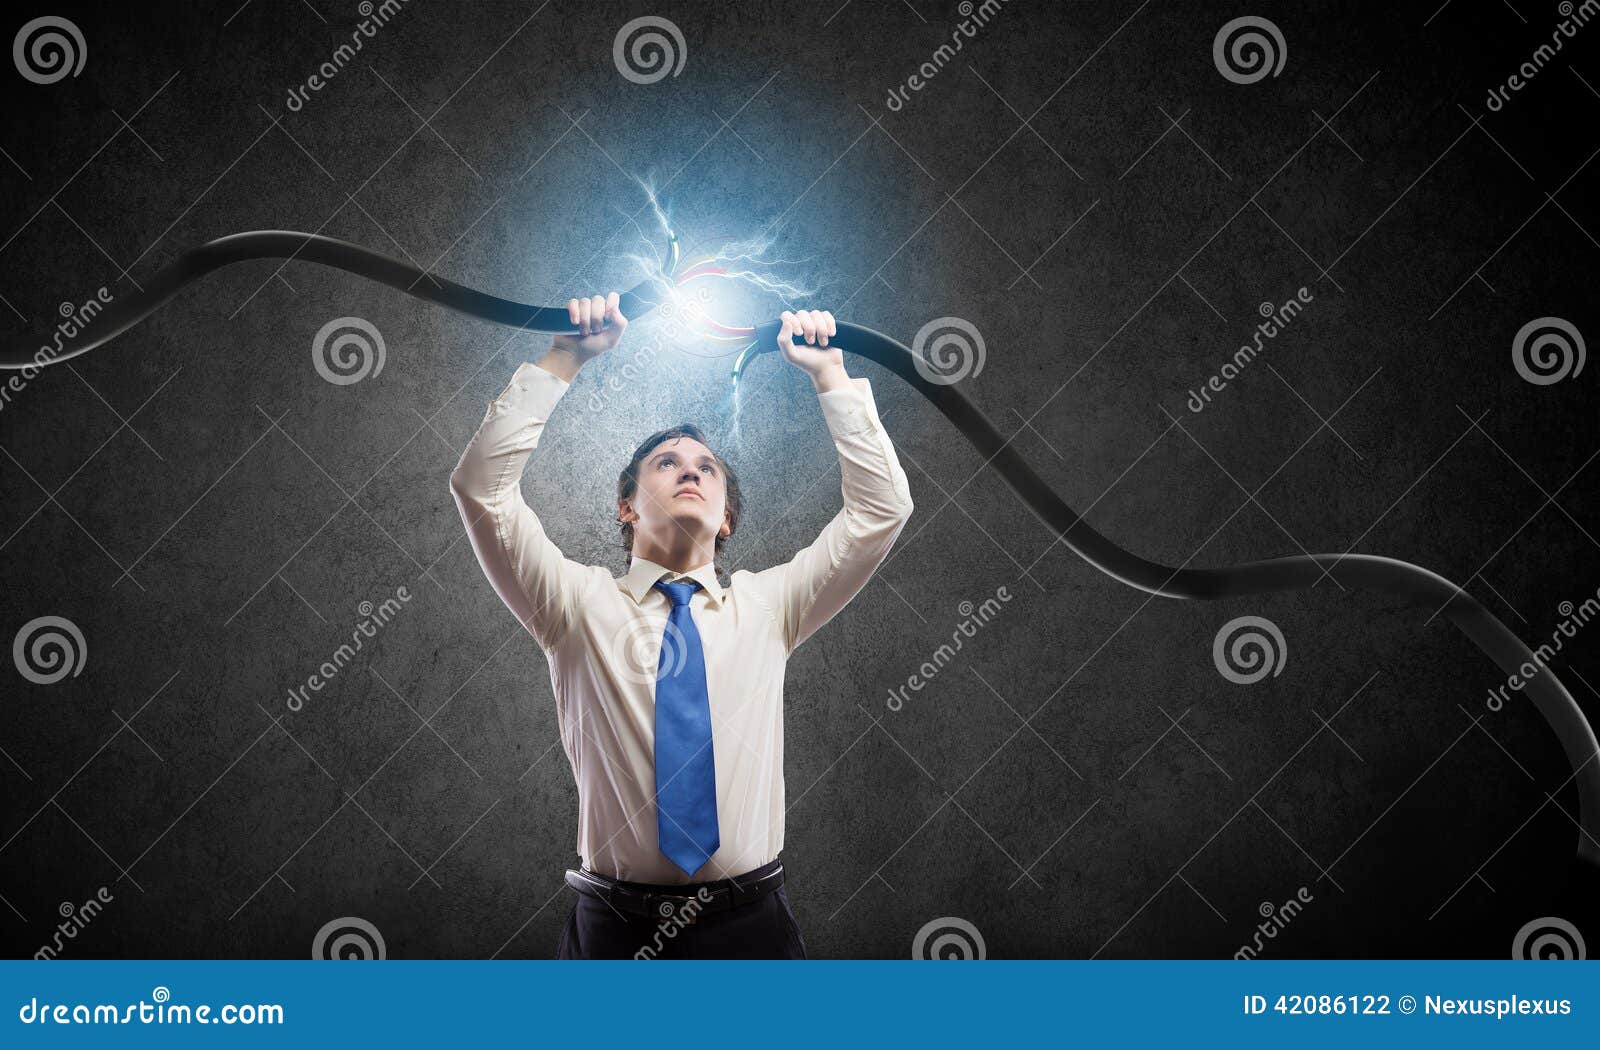 Разрыв сети. Провод в руке. Мужчина с проводом в руке. Разрыв провода. Разорванные провода.